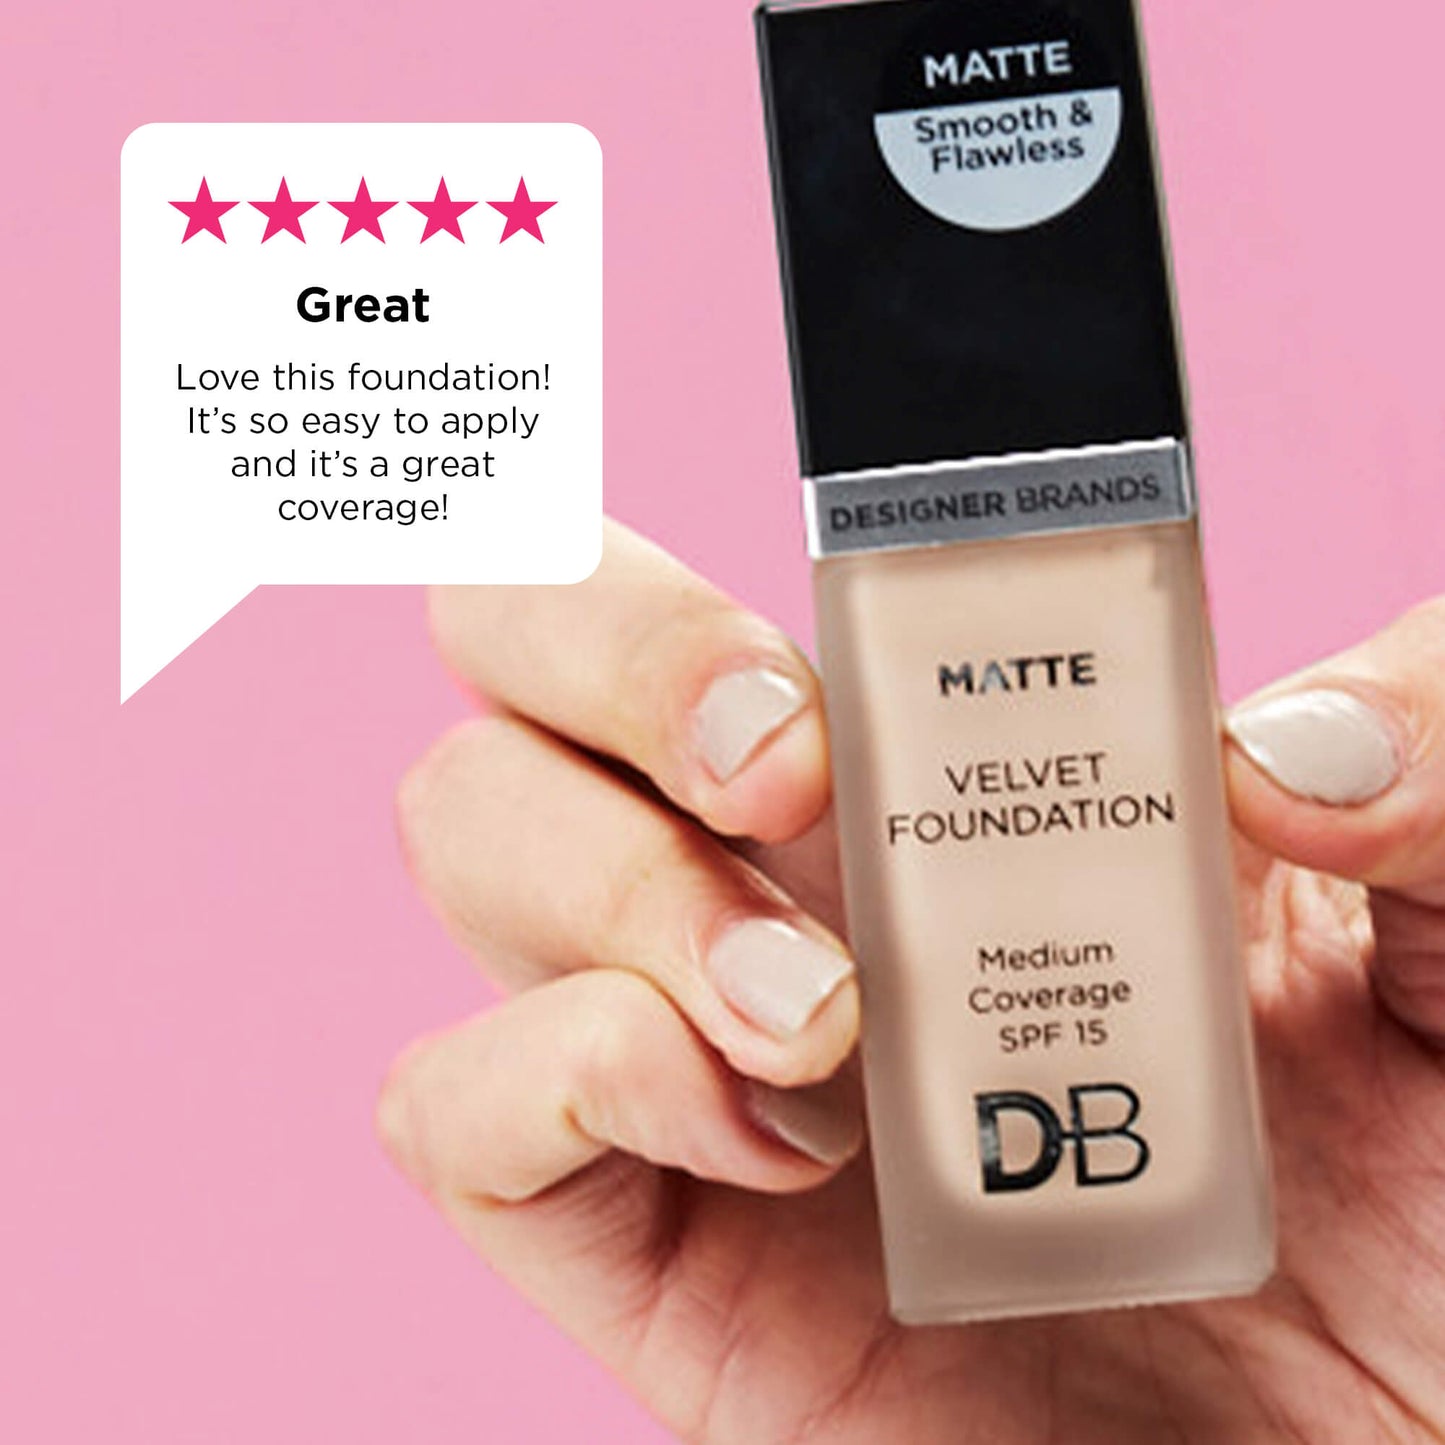 Matte Velvet Foundation Hero Review | DB Cosmetics